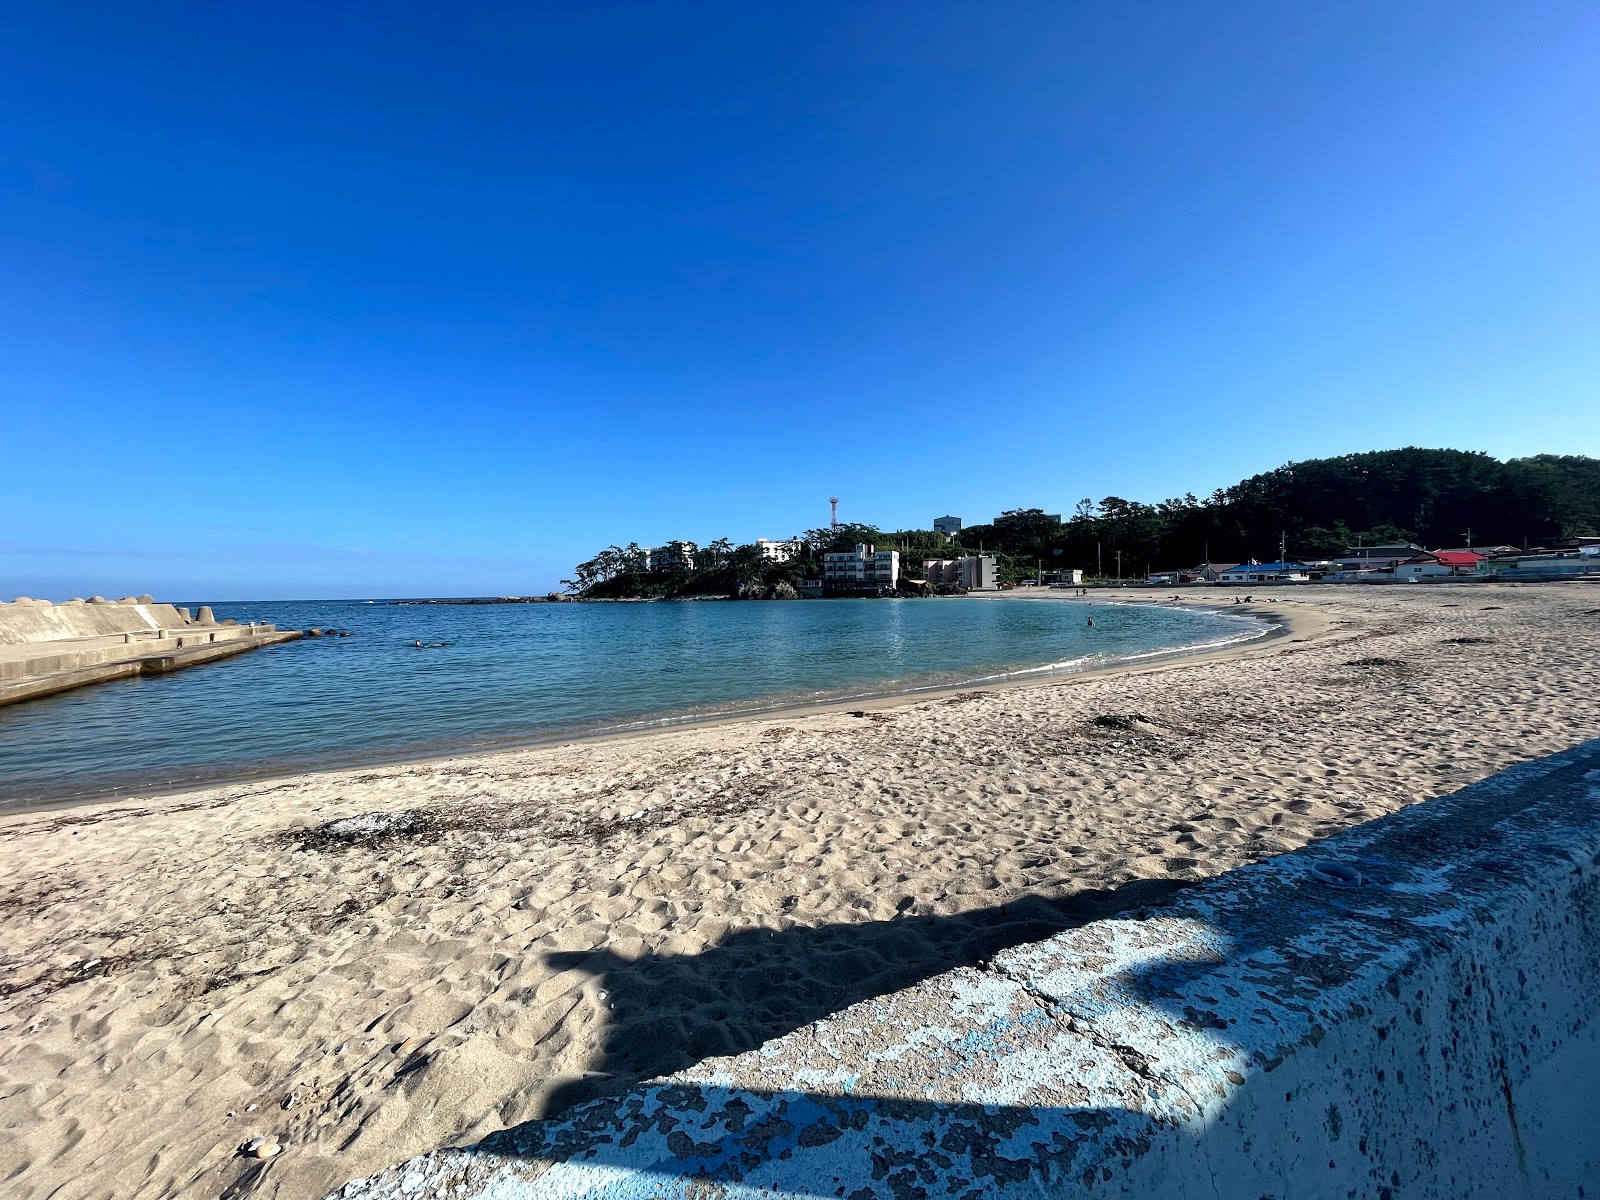 Hajeong Sandy Beach'in fotoğrafı imkanlar alanı